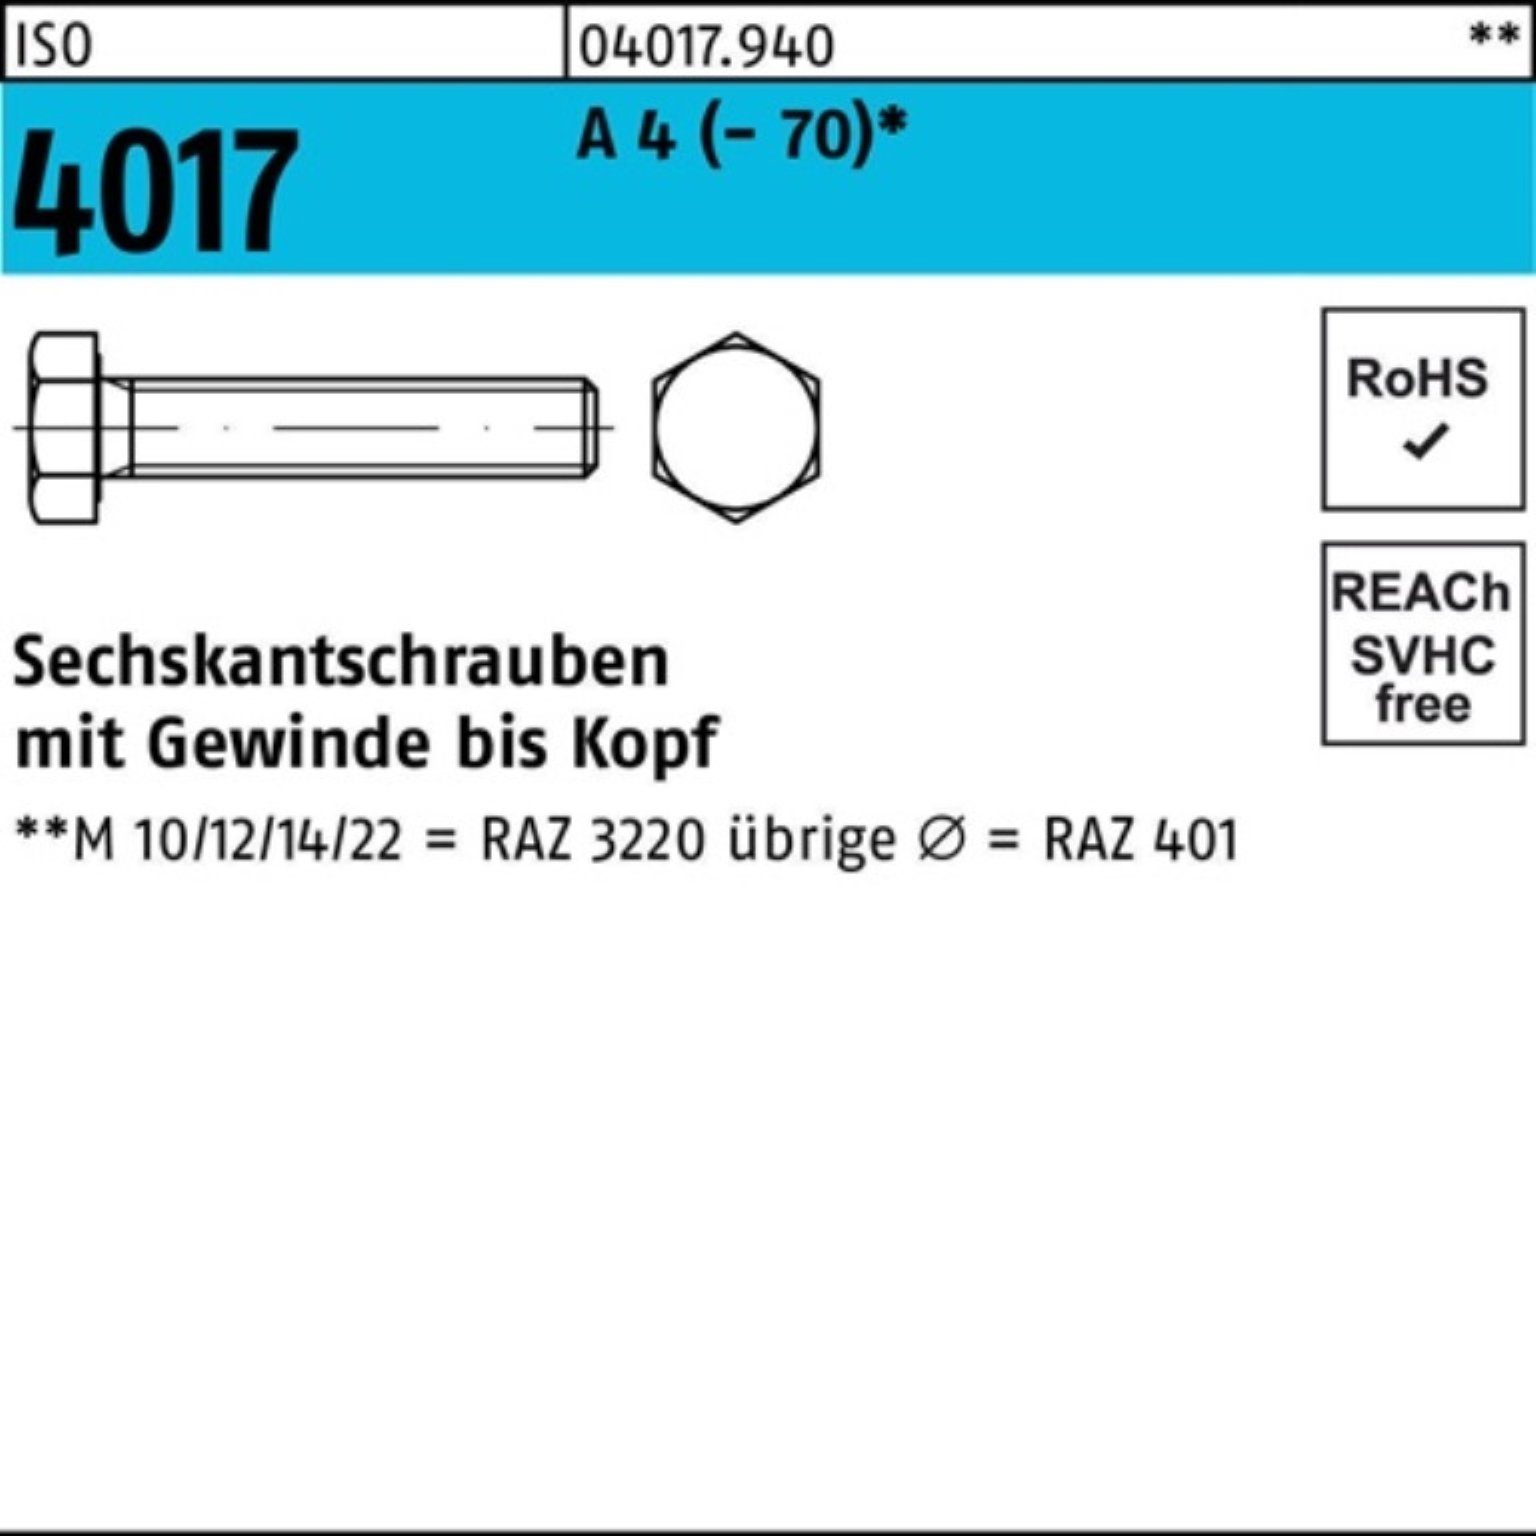 Bufab Sechskantschraube 100er Pack Sechskantschraube ISO 4017 VG M18x 45 A 4 (70) 1 Stück I